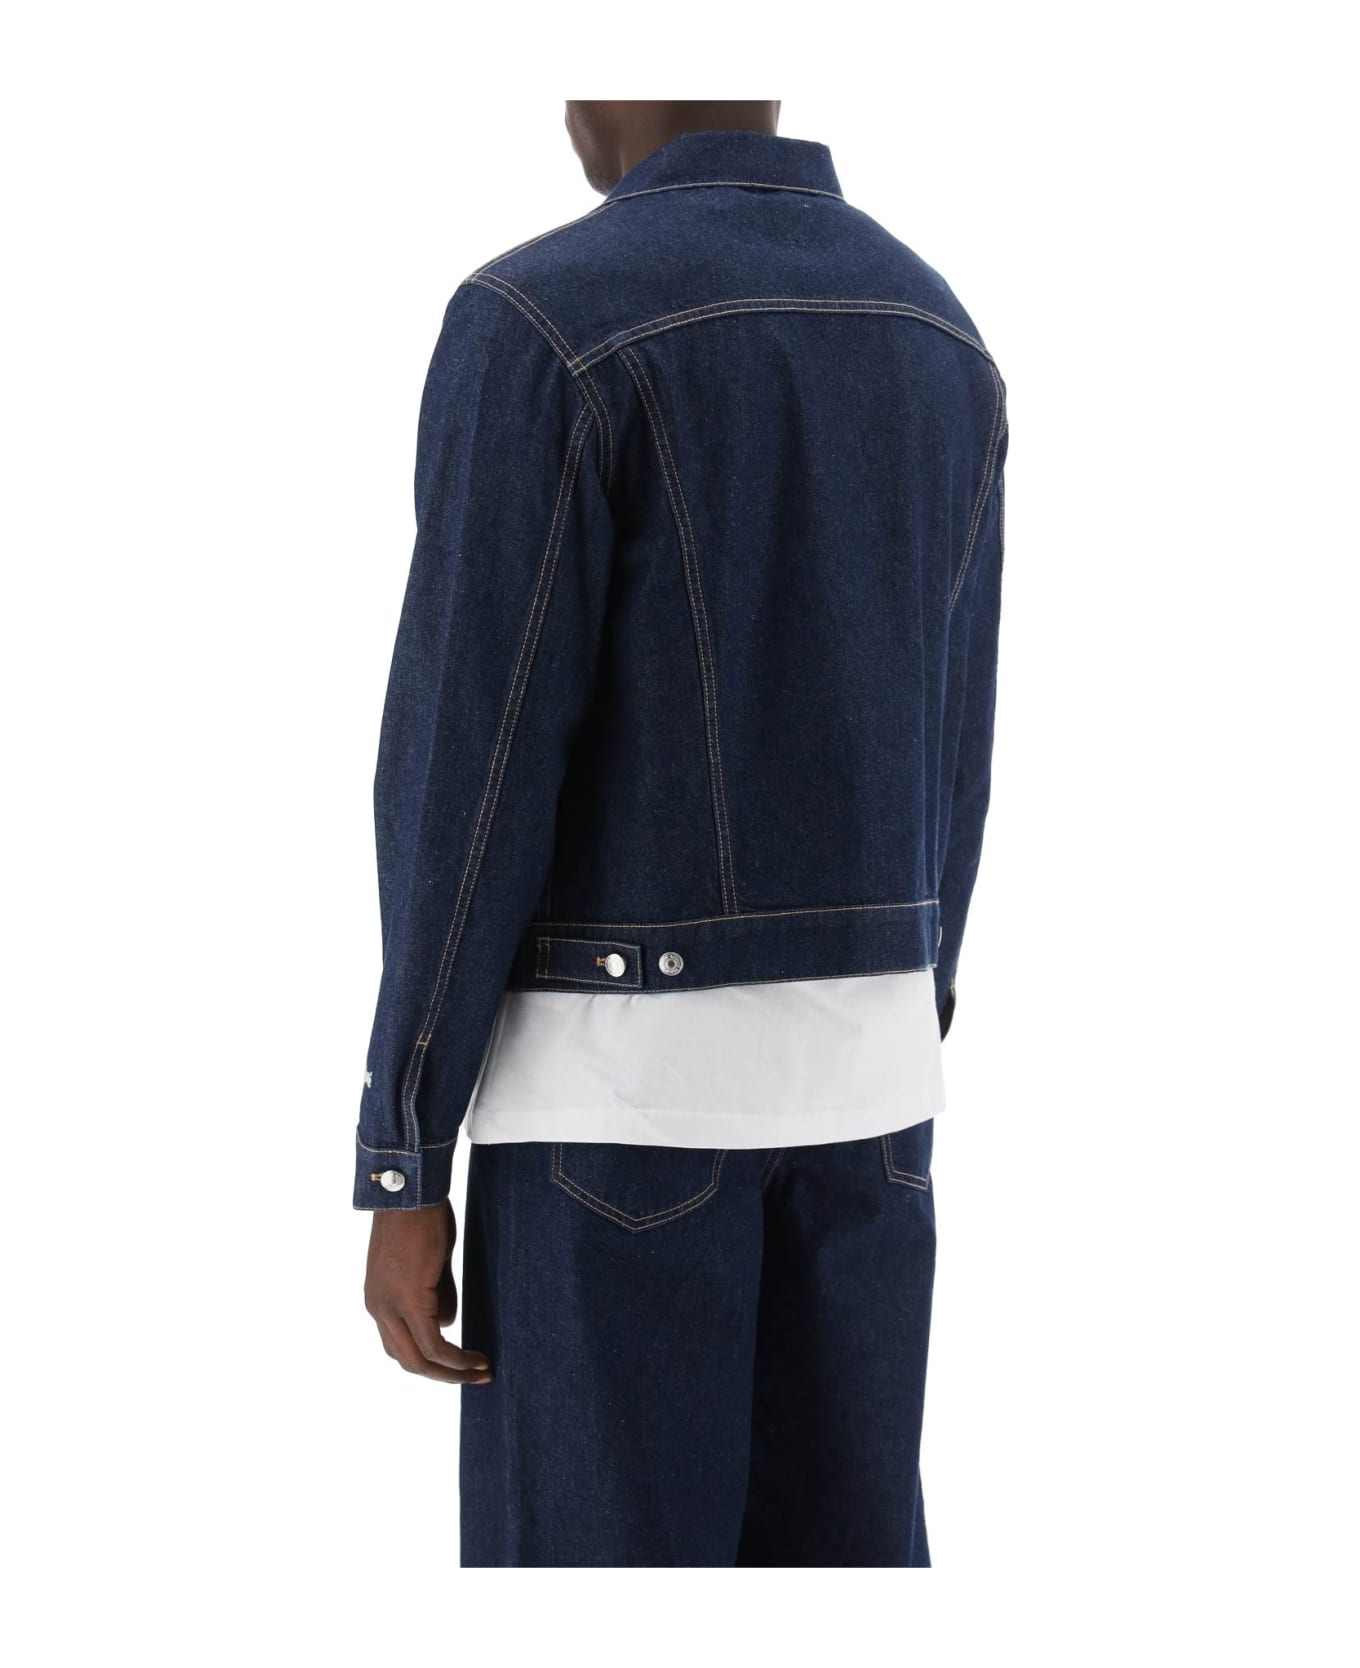 Maison Kitsuné Light Denim Jacket - WASHED INDIGO (Blue)